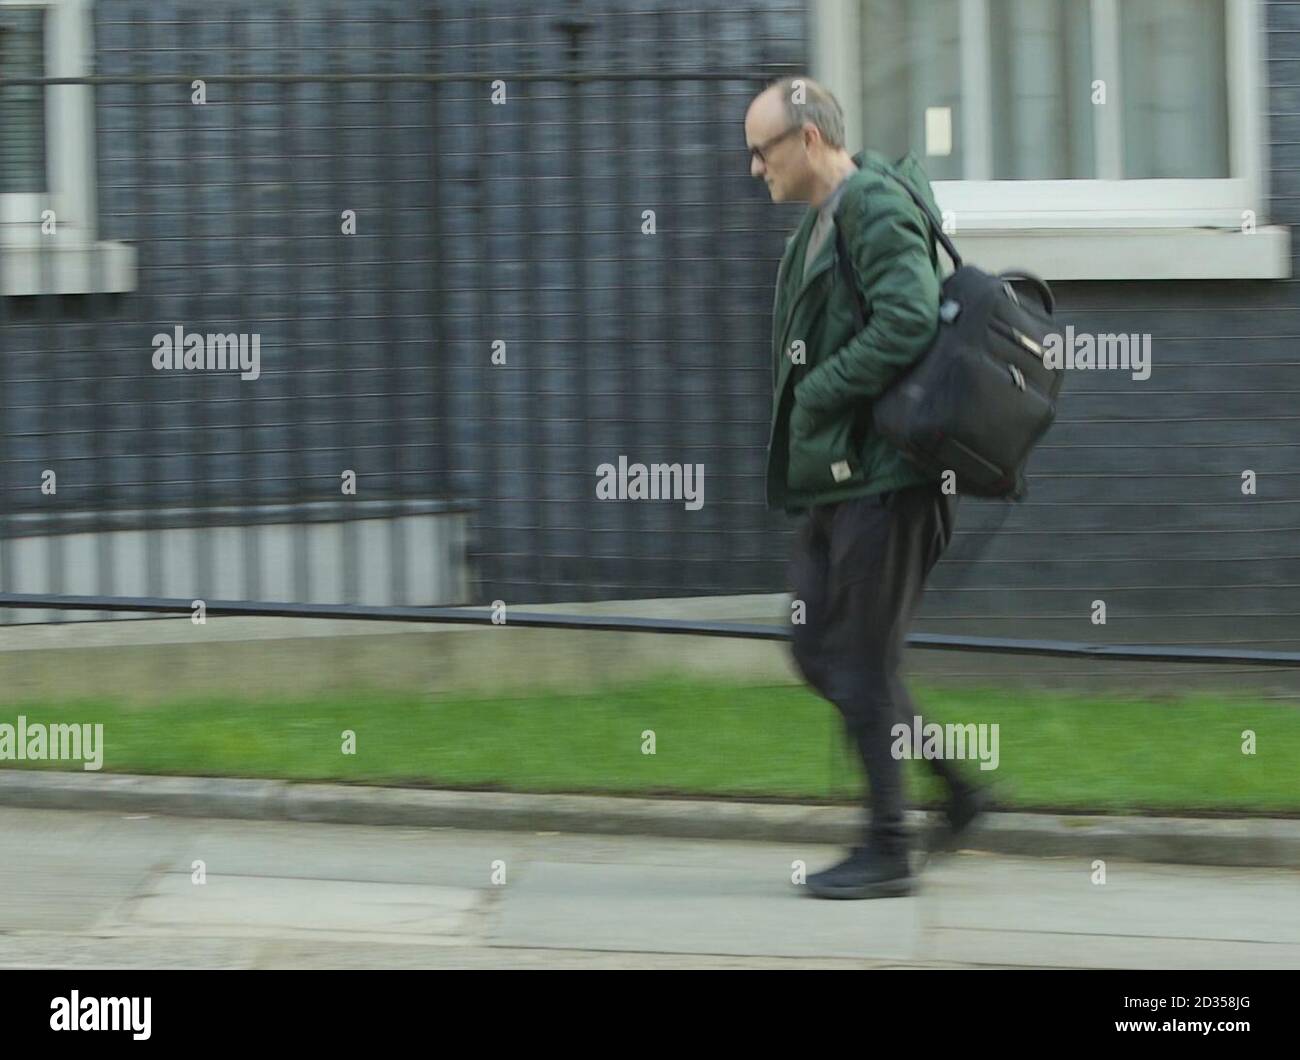 Screengrab tiré de la vidéo de l'AP de Dominic Cummings, conseiller en chef du Premier ministre Boris Johnson, portant des survêtements à son arrivée à Downing Street, Londres, le lendemain de la mise en isolement du Royaume-Uni par le Premier ministre Boris Johnson pour aider à freiner la propagation du coronavirus. Banque D'Images